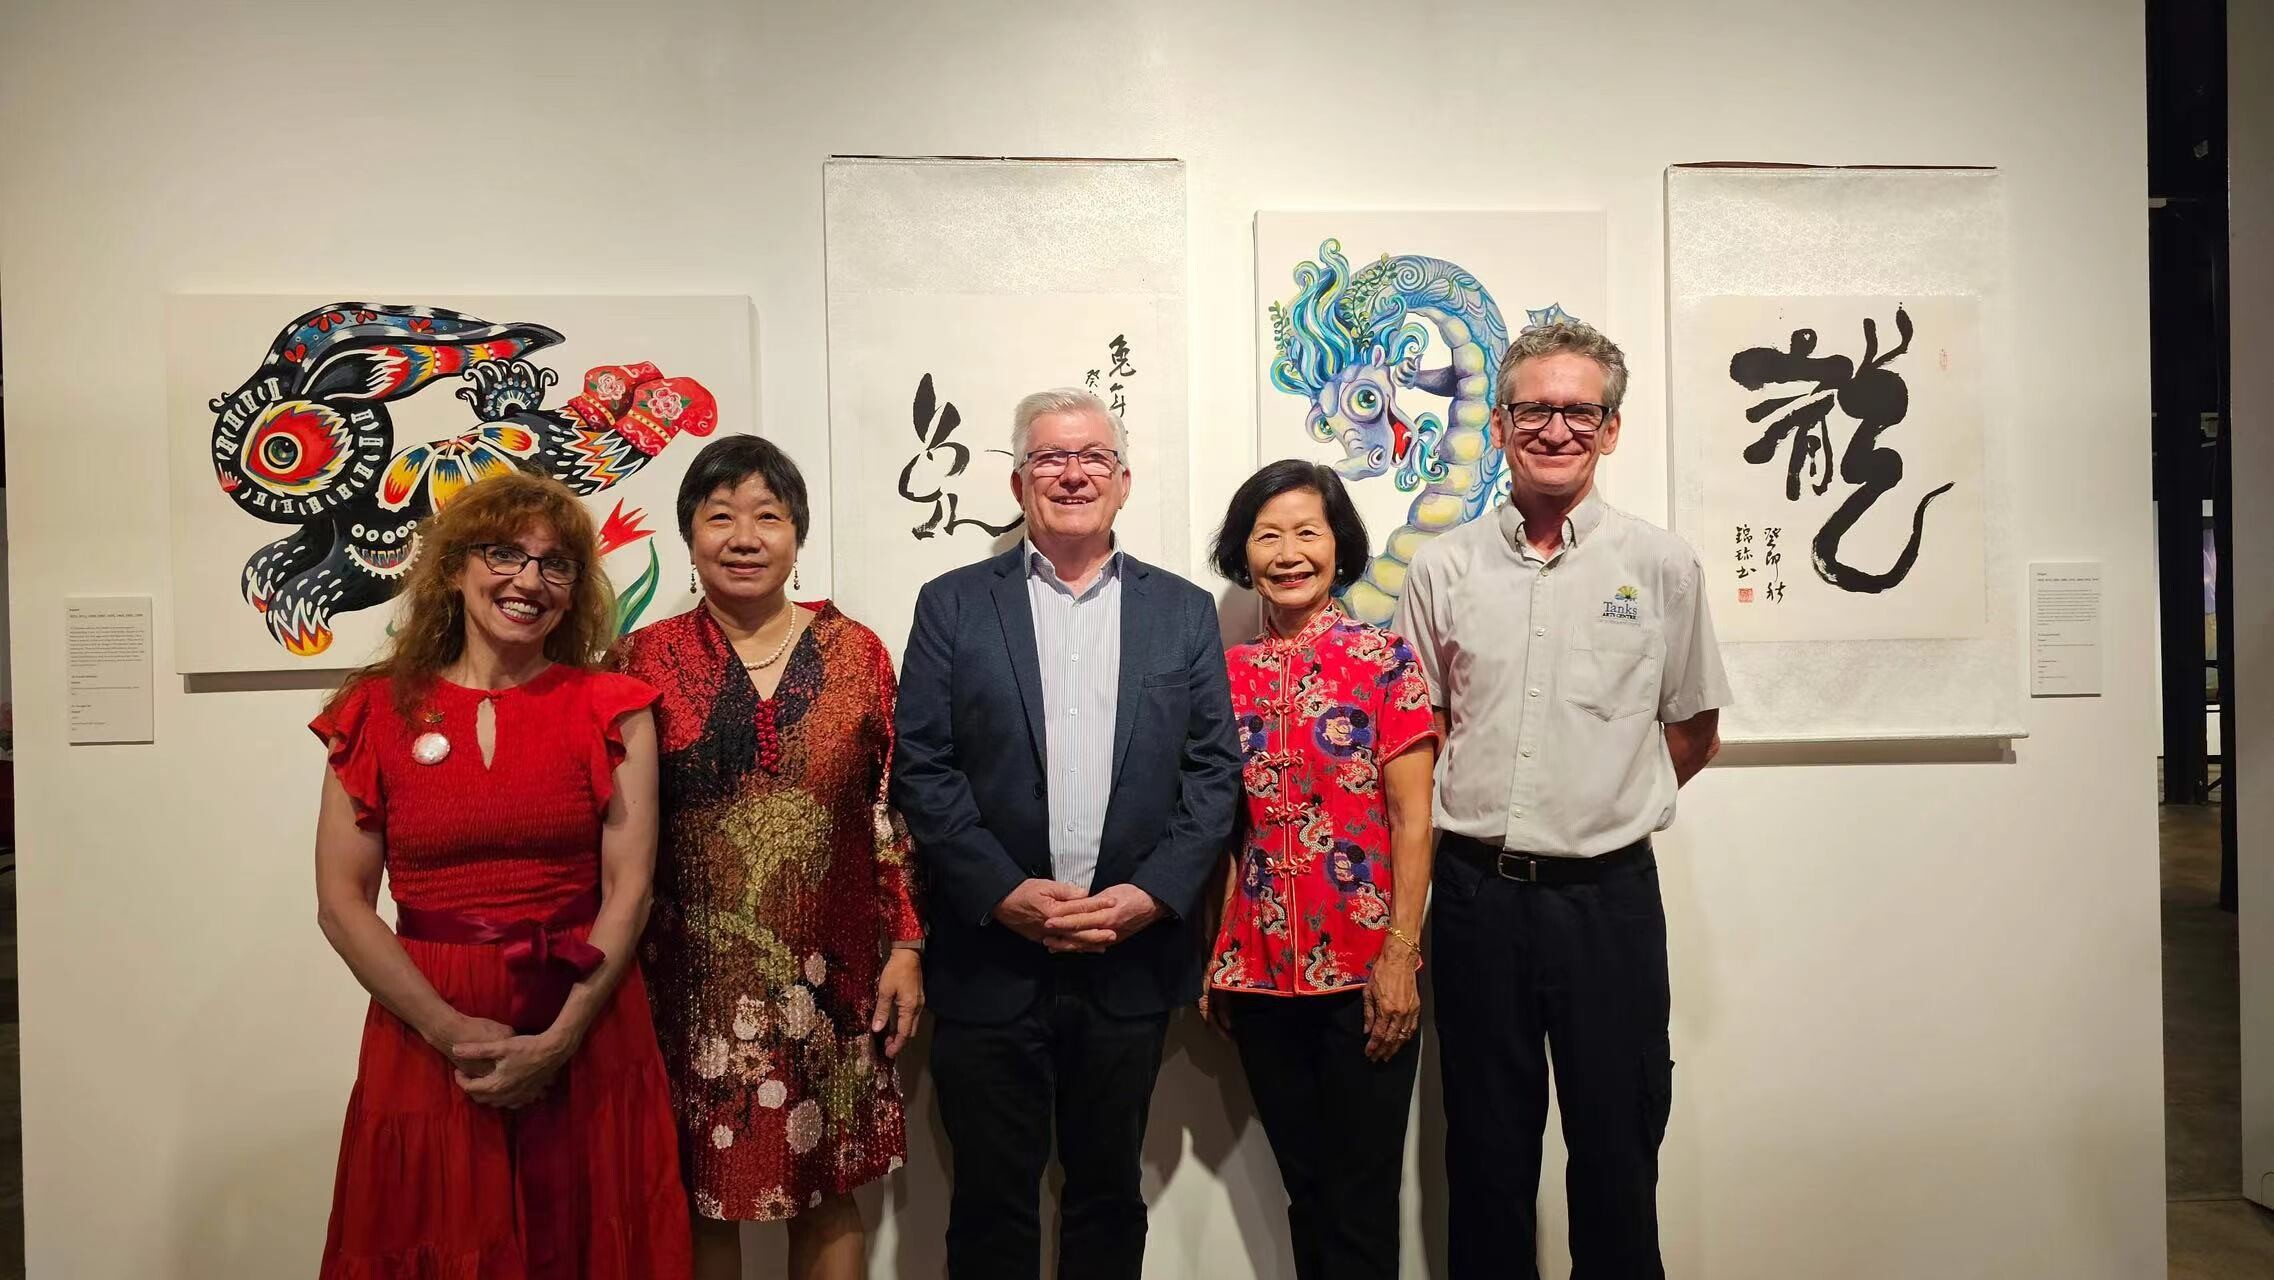 中国湛江十二生肖书画展在澳大利亚凯恩斯隆重开幕